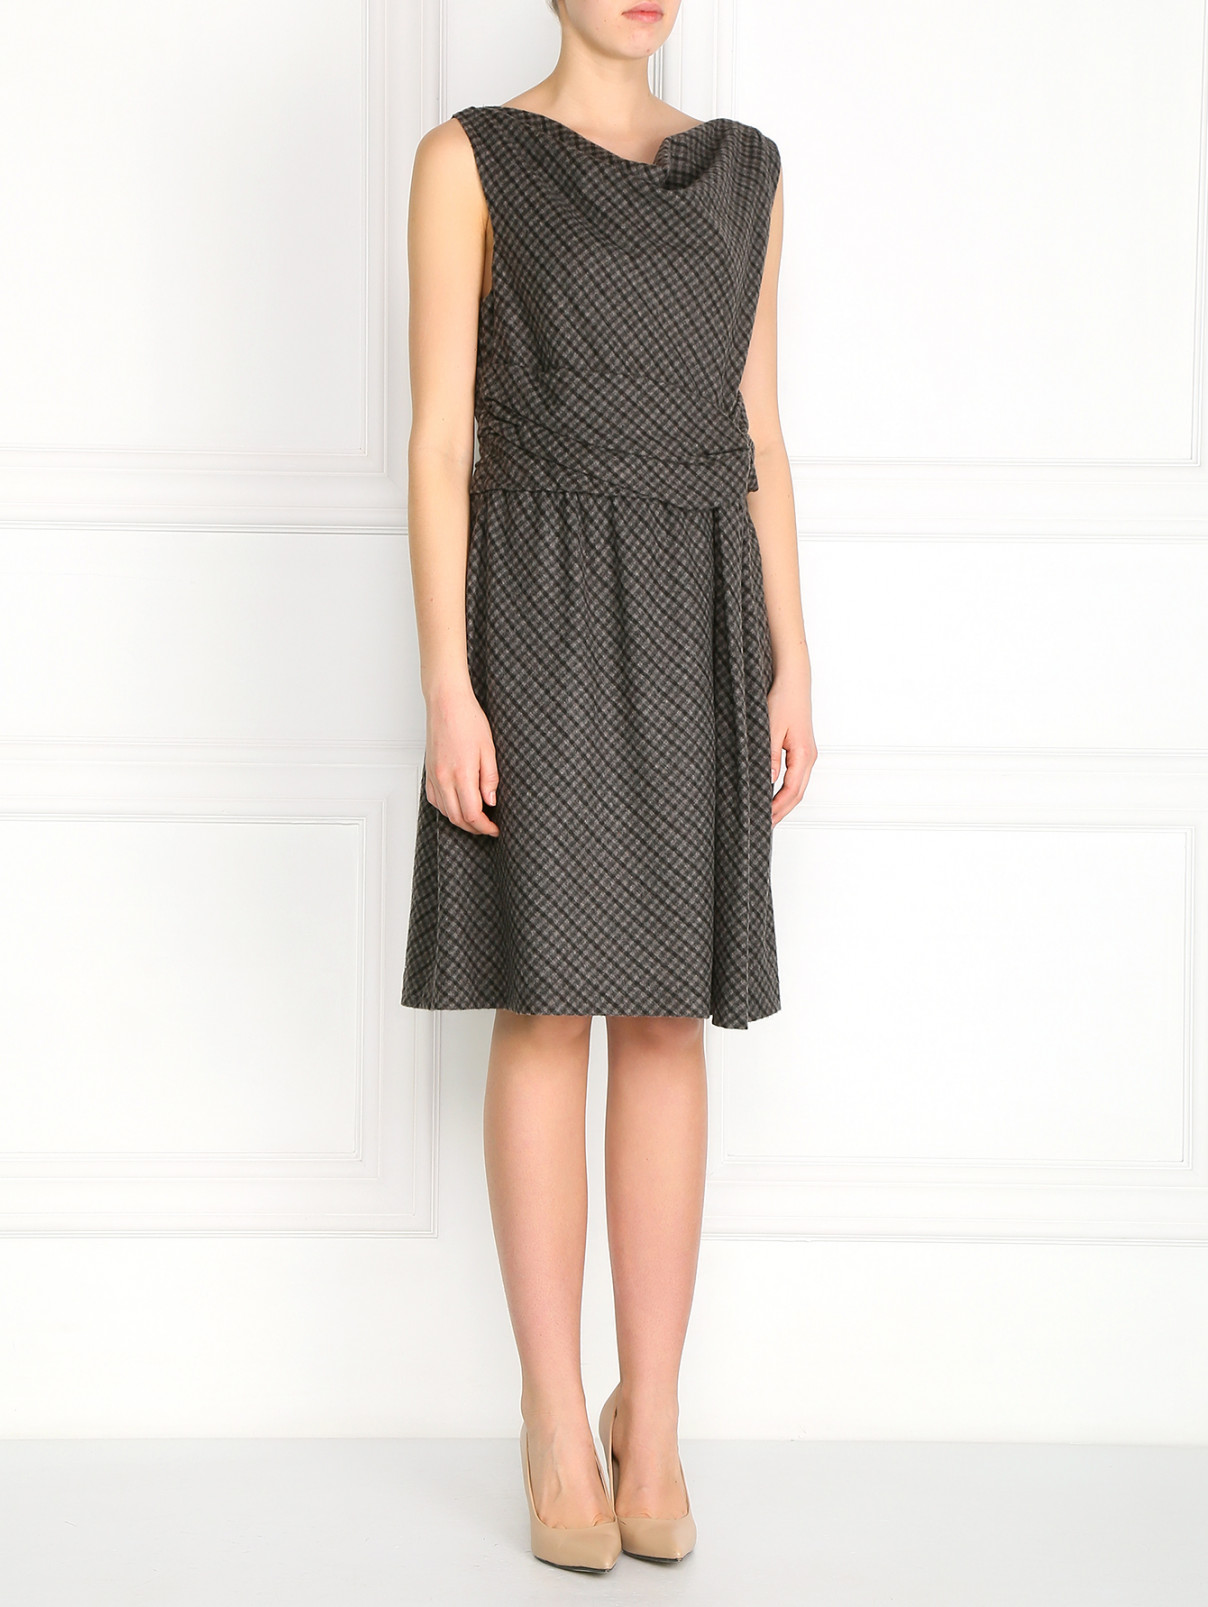 Платье из шерсти со сборкой на талии и узором "клетка" Moschino  –  Модель Общий вид  – Цвет:  Серый